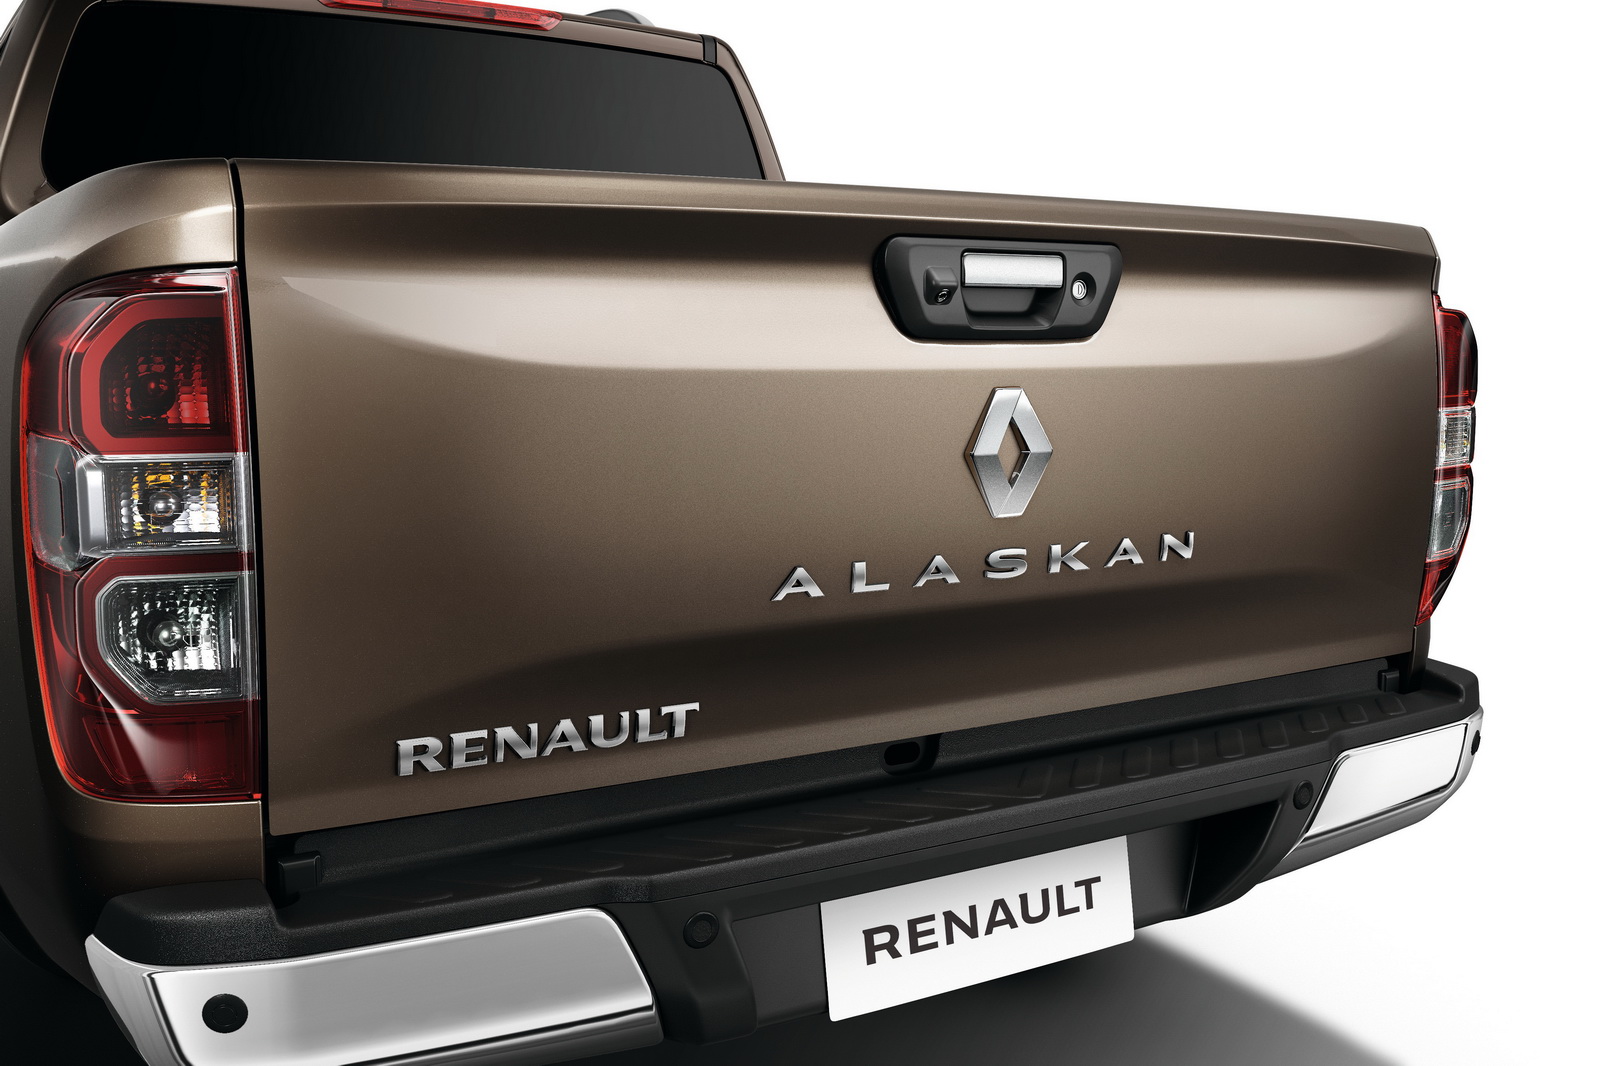 
Với chiều cao gầm 230 mm, Renault Alaskan hứa hẹn sẽ đáp ứng được nhu cầu của nhiều khách hàng, từ các công ty chuyên chở hàng đến người dùng cá nhân. Theo hãng Renault, Alaskan có khả năng kéo tốt nhất phân khúc với mức 3,5 tấn.
